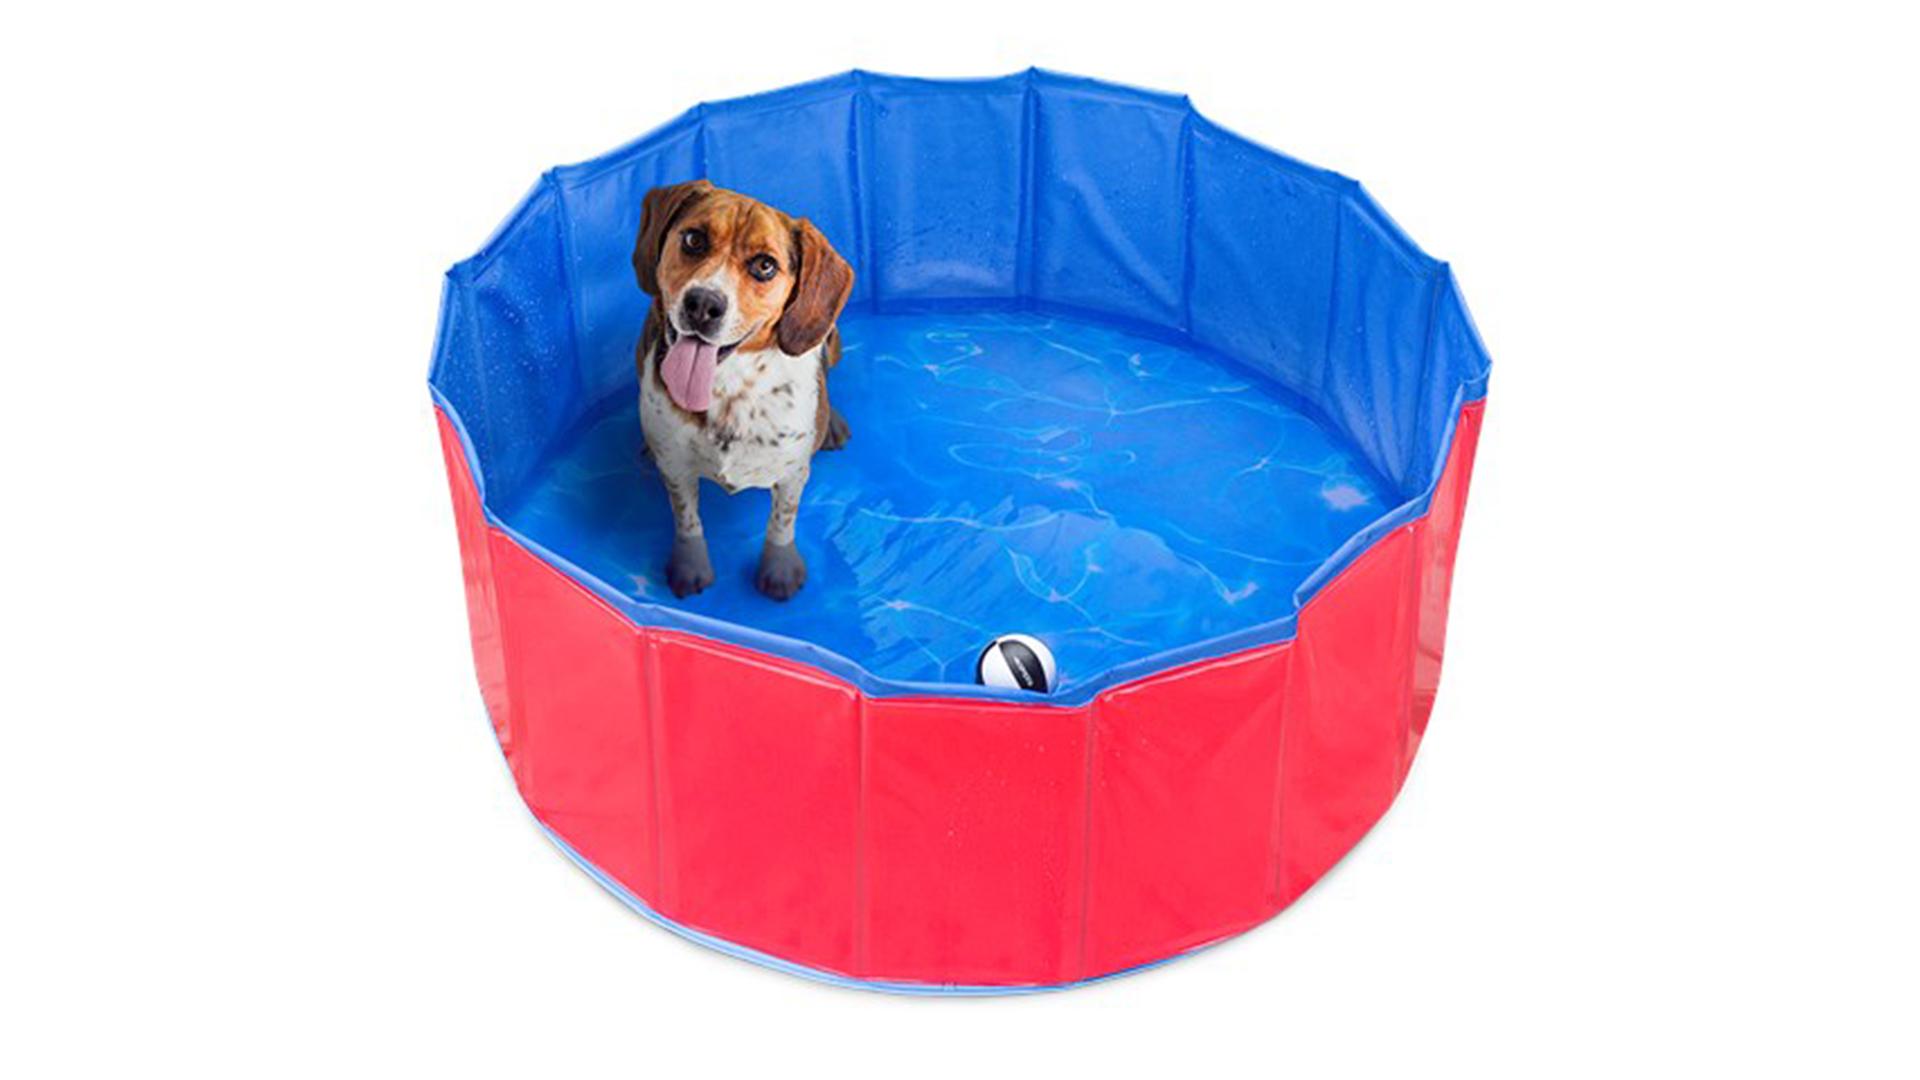 vragen krijgen Lift Dit hondenzwembad haal je voor een prikkie bij de Action - JFK